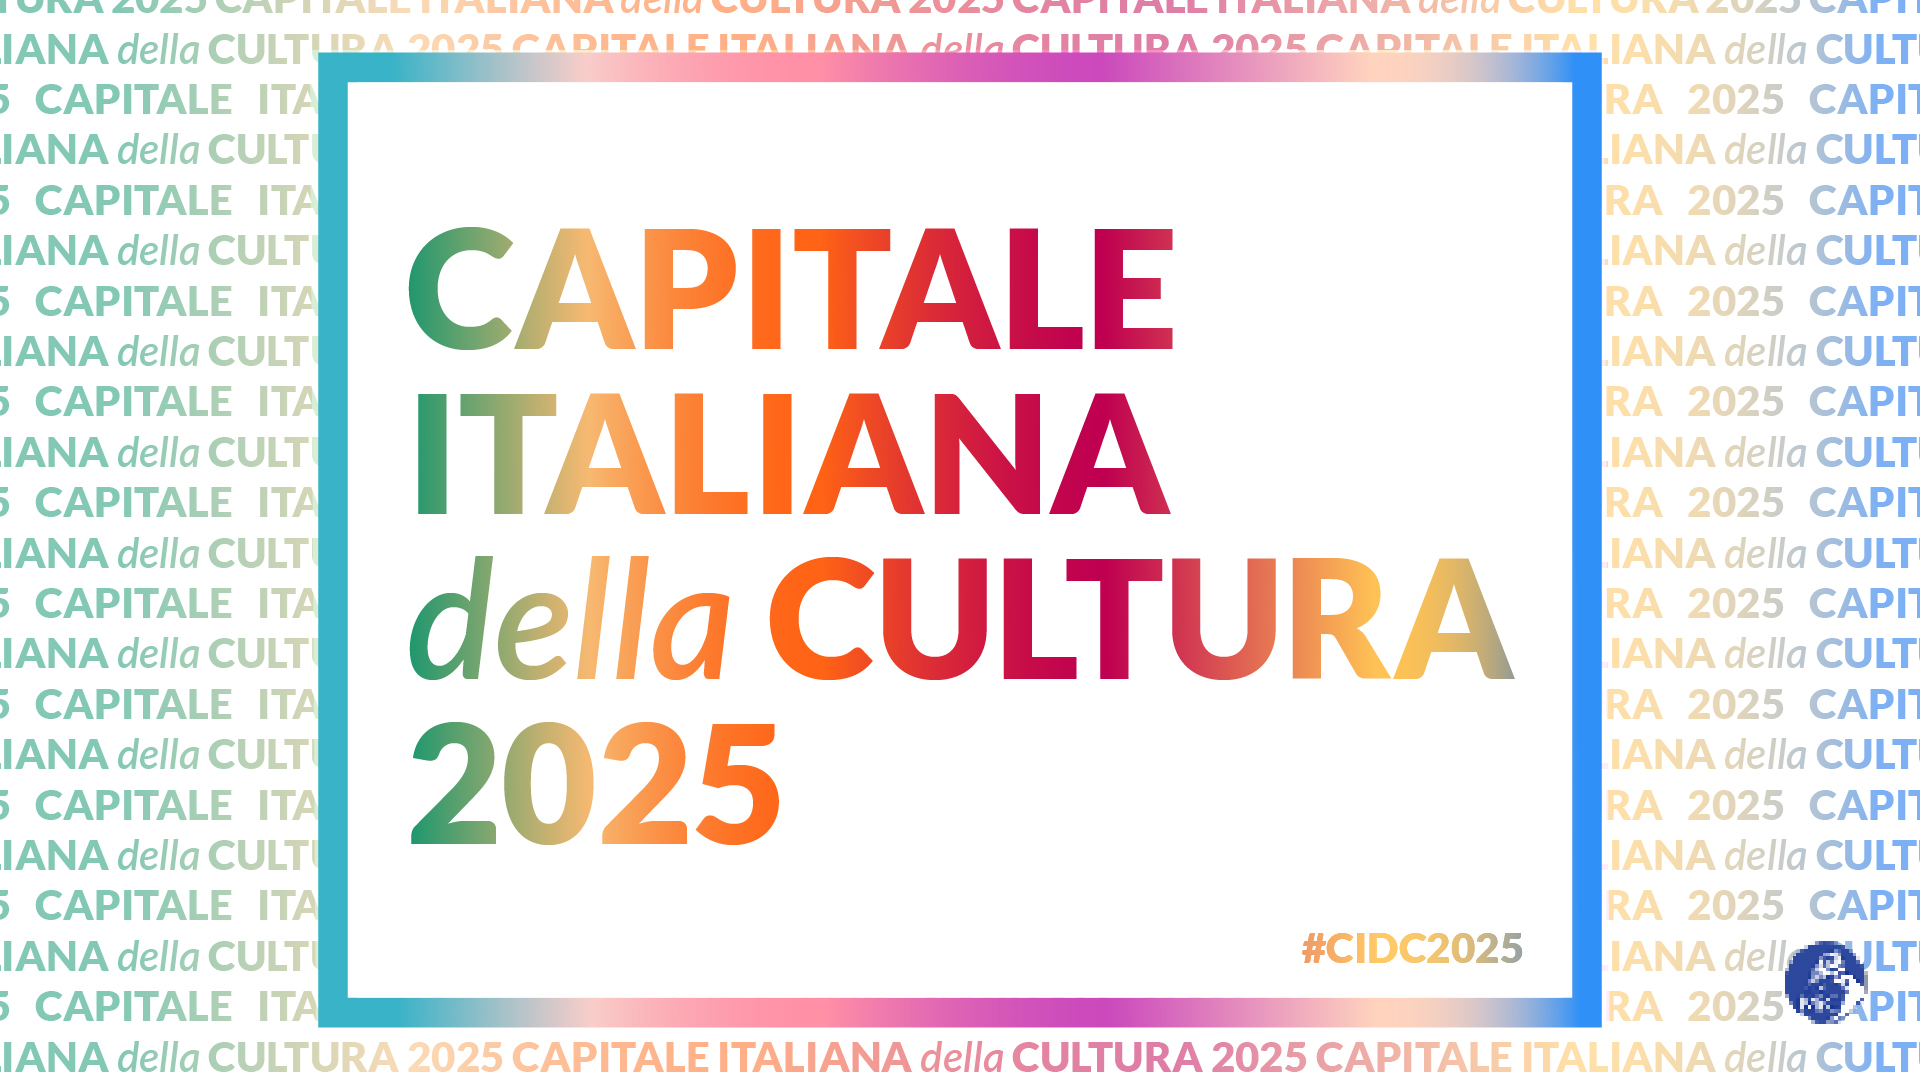 Capitale Italiana della Cultura 2025: Locride tu NO!